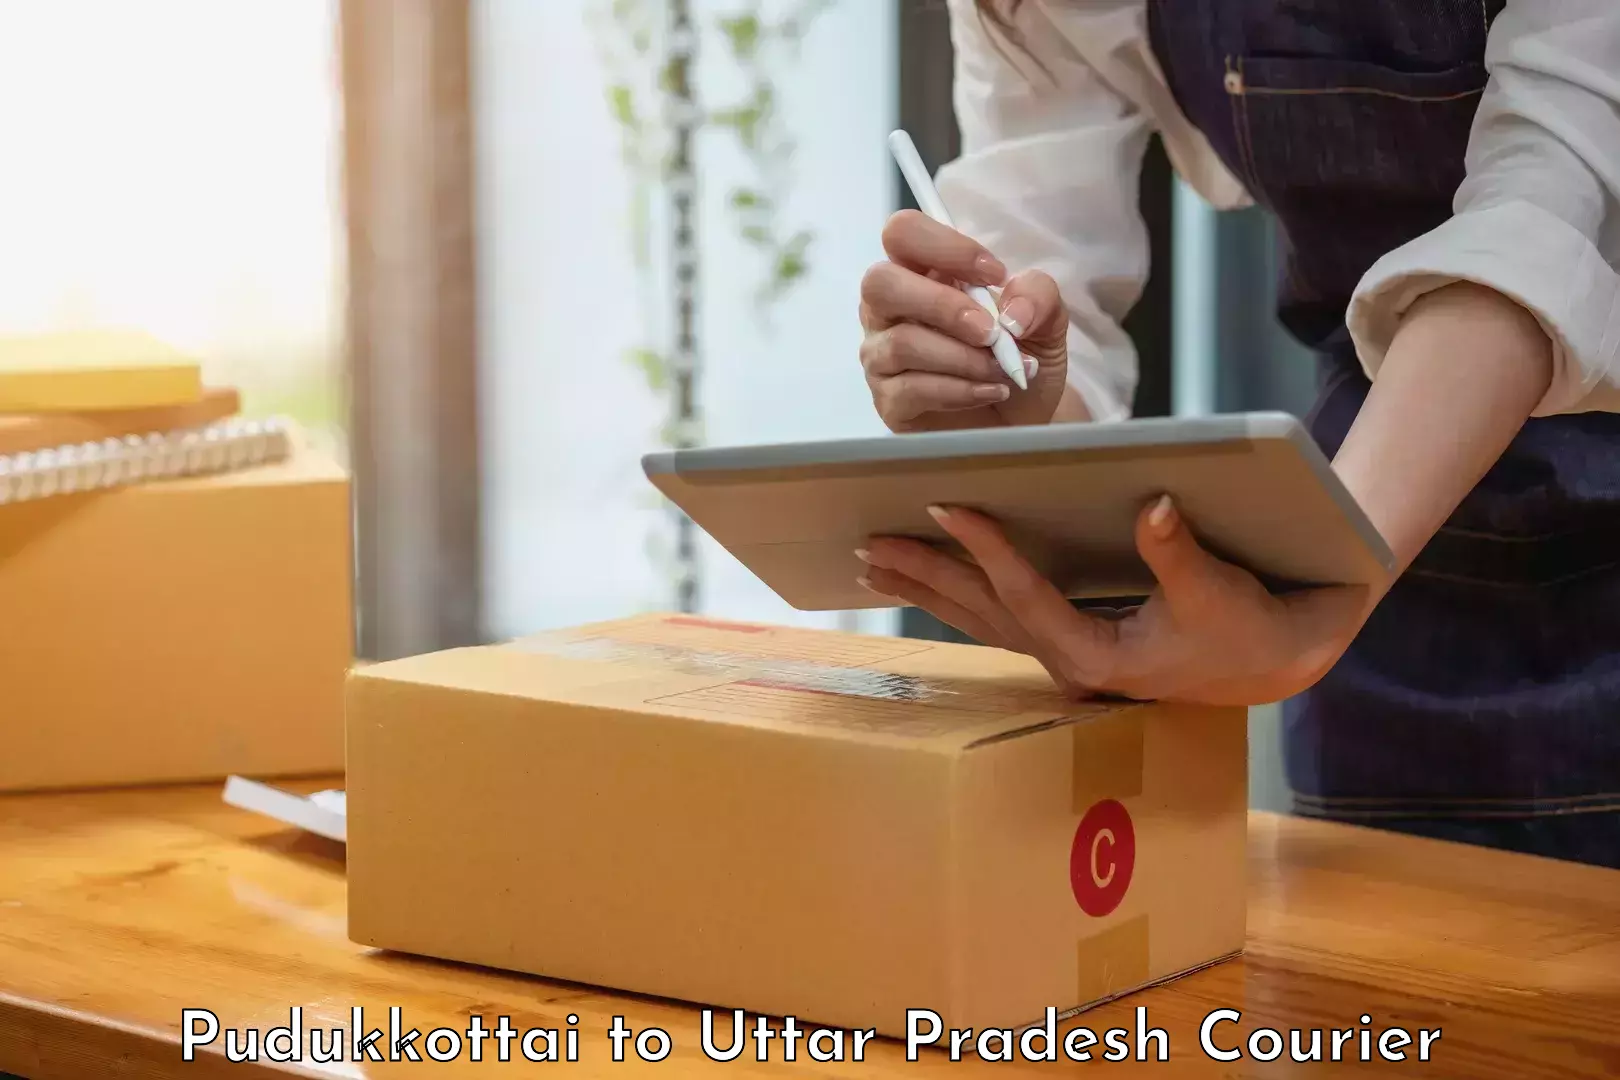 Reliable courier services Pudukkottai to Saray Ankil